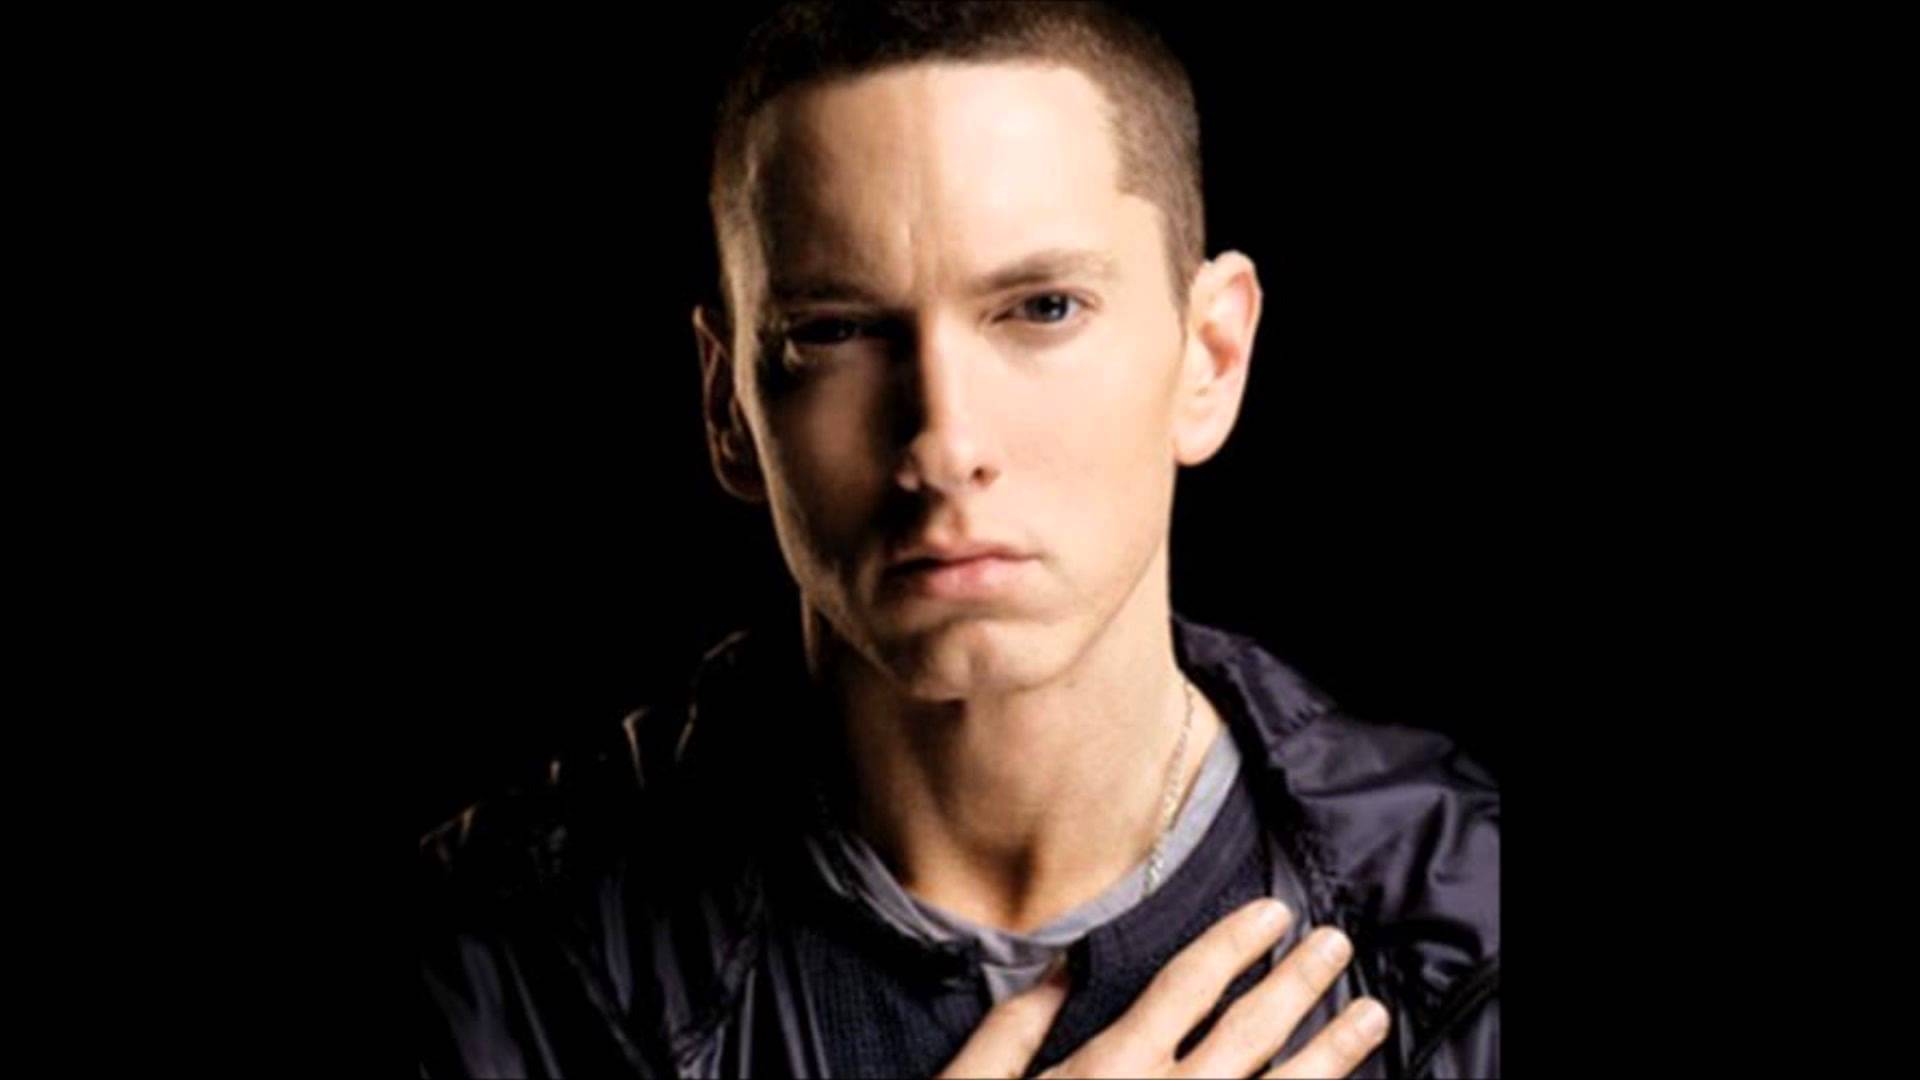 Eminem Backgrounds, Compatible - PC, Mobile, Gadgets| 1920x1080 px